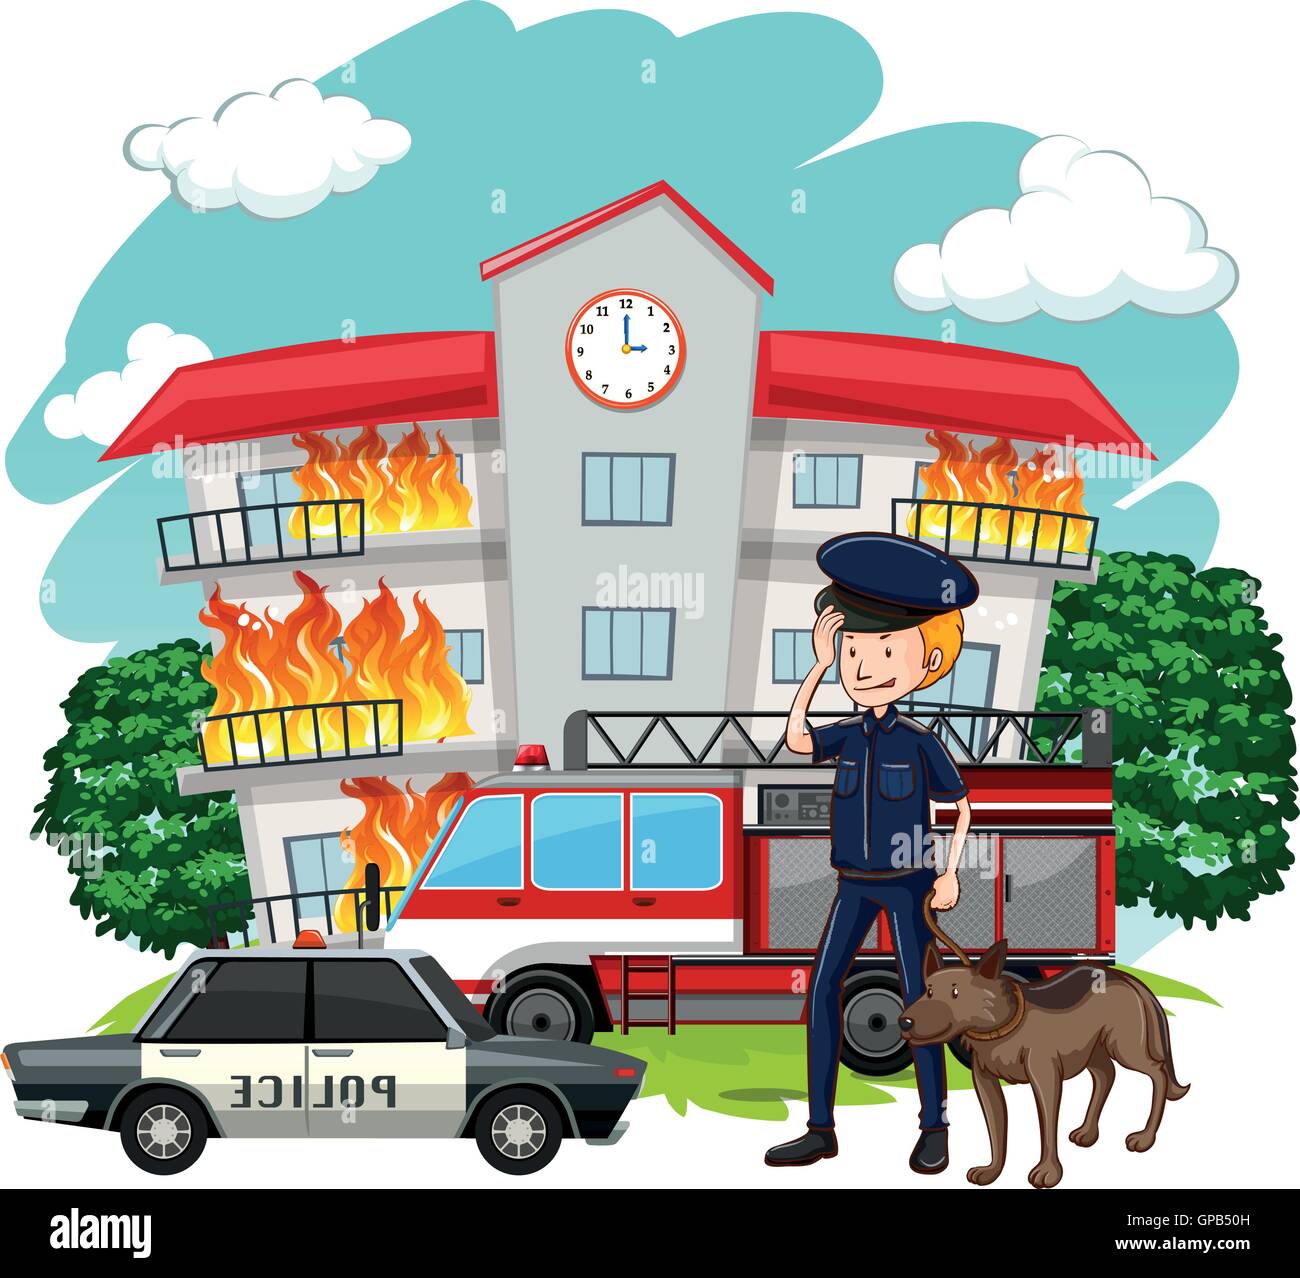 Polizist und Hund am Feuer Szene Abbildung Stock Vektor